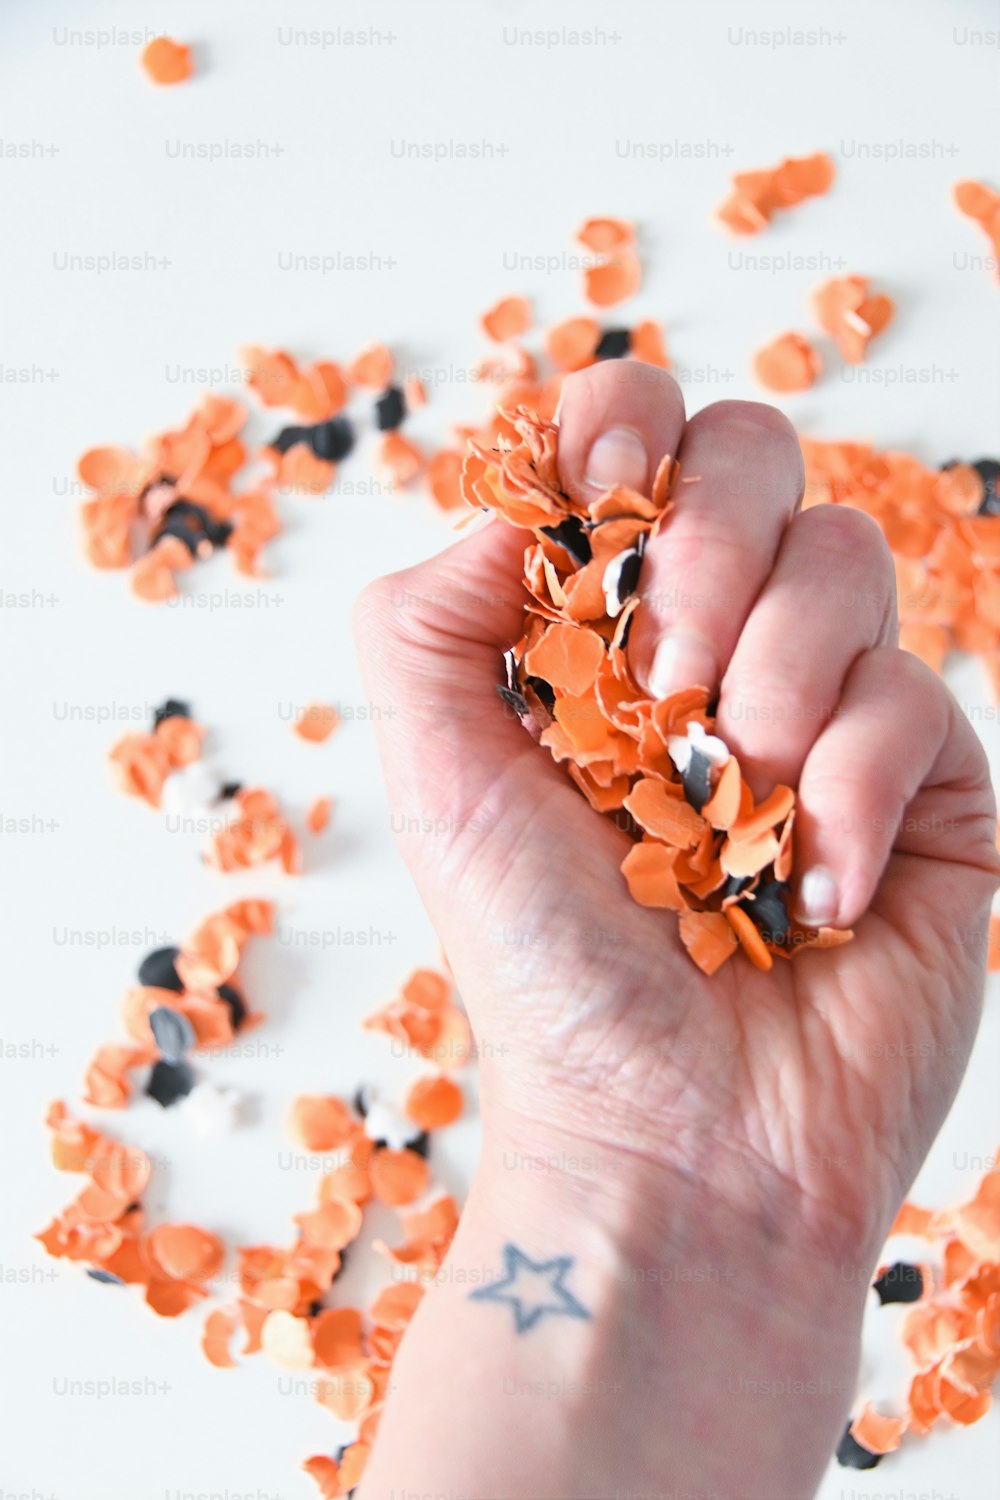 Una mano sosteniendo un puñado de confeti naranja y negro